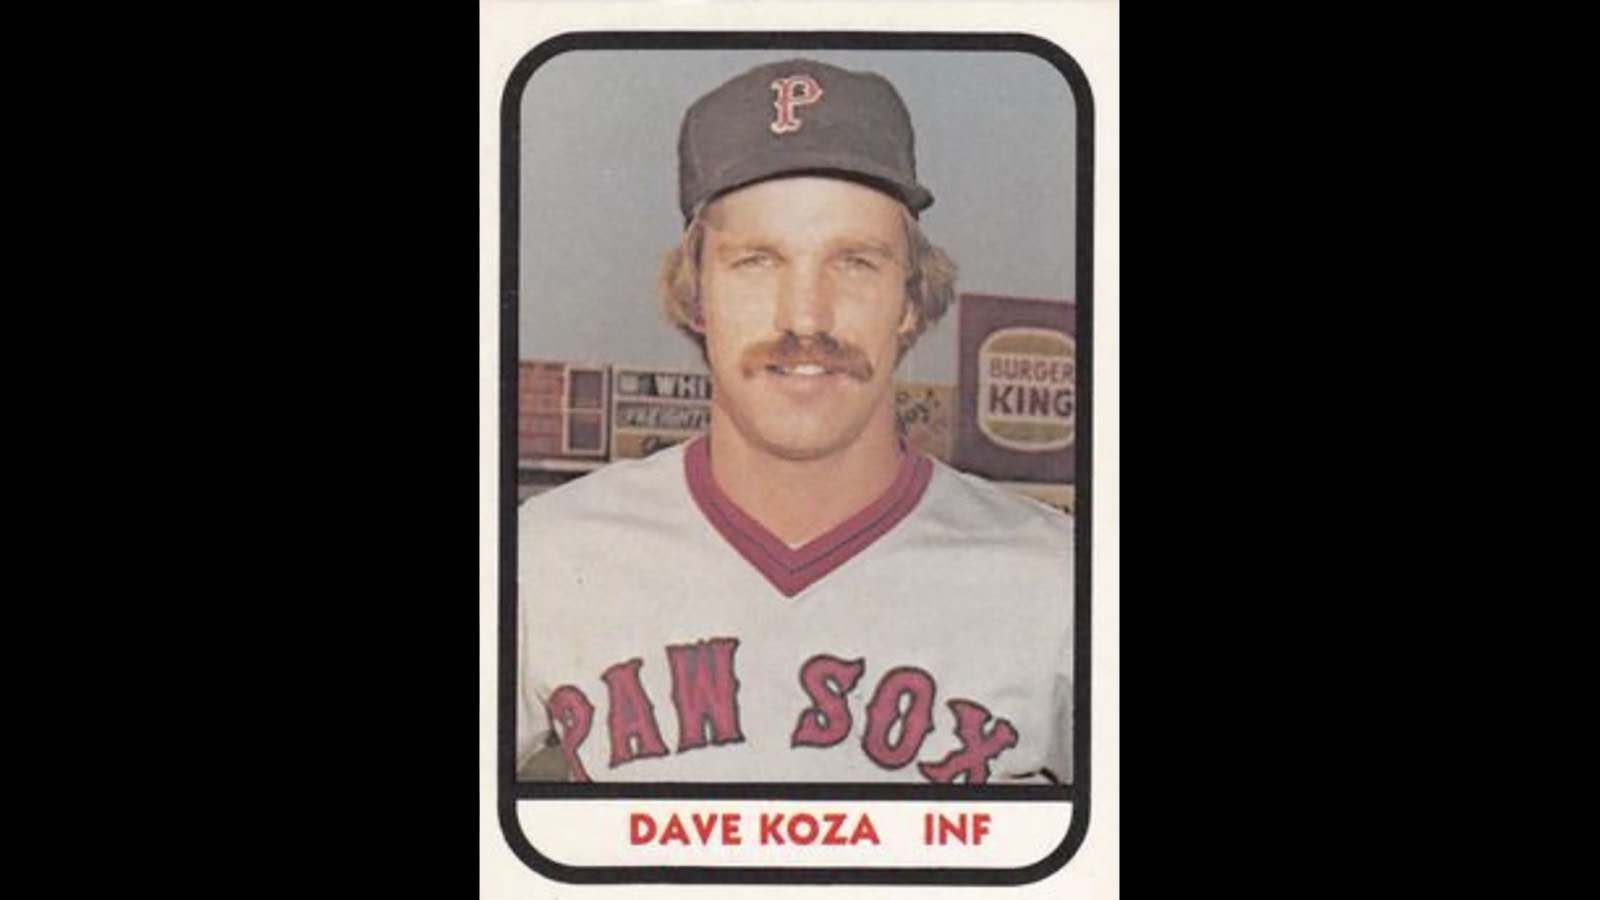 Dave Koza's 1981 baseball card.